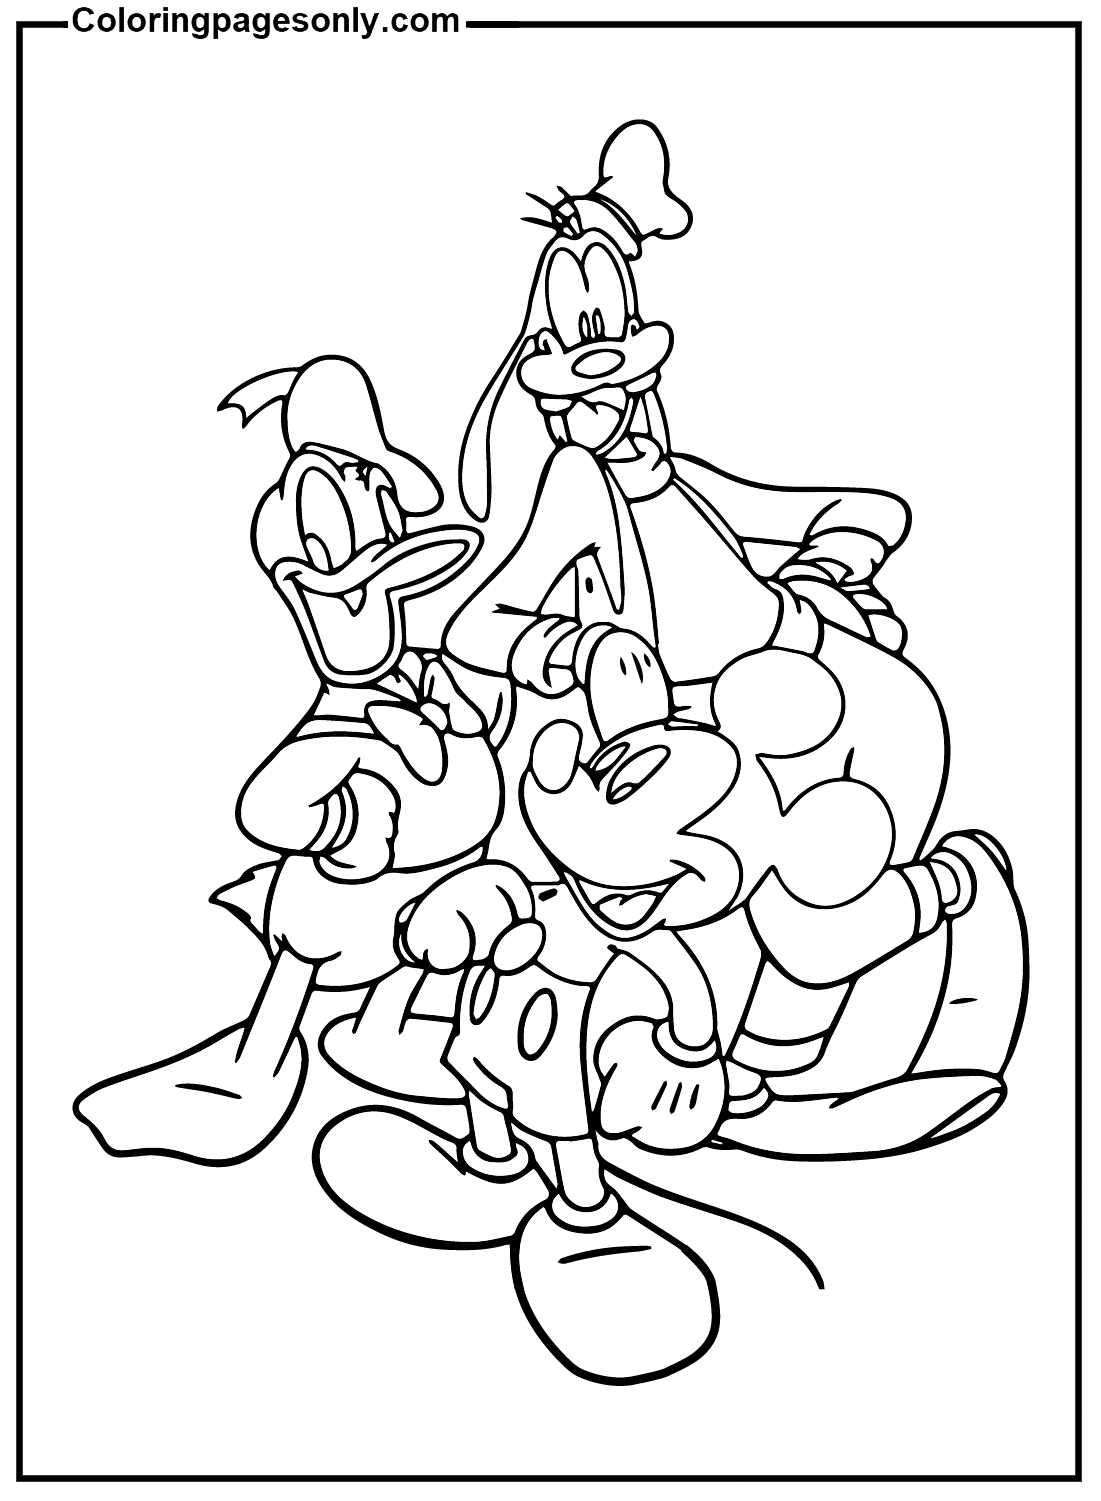 Goofy, Mickey Mouse, Donald Duck Kingdom Hearts van Kingdom Hearts